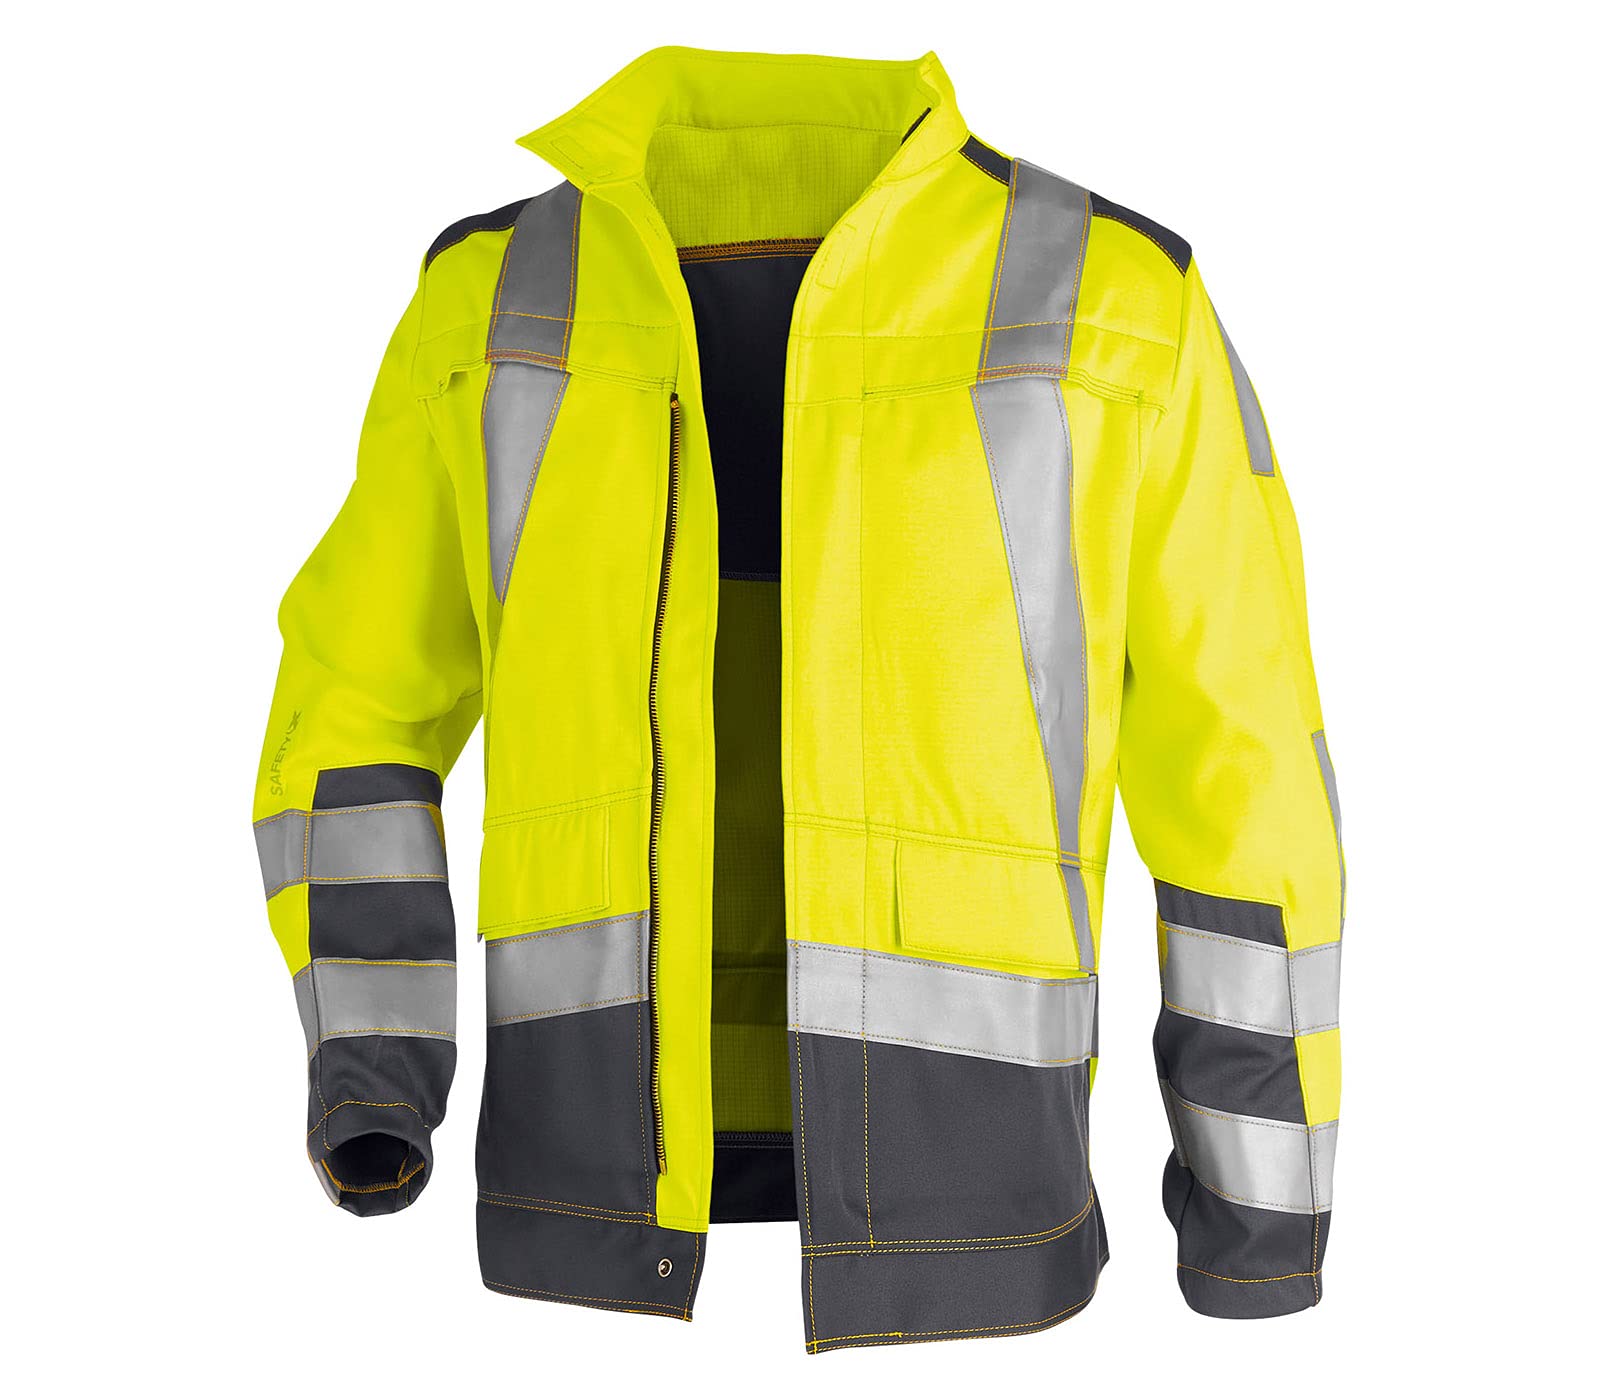 KÜBLER Workwear KÜBLER SAFETY X Arbeitsjacke warngelb, Größe 60, Herren-Arbeitsjacke aus Mischgewebe, zertifizierte Arbeitsjacke